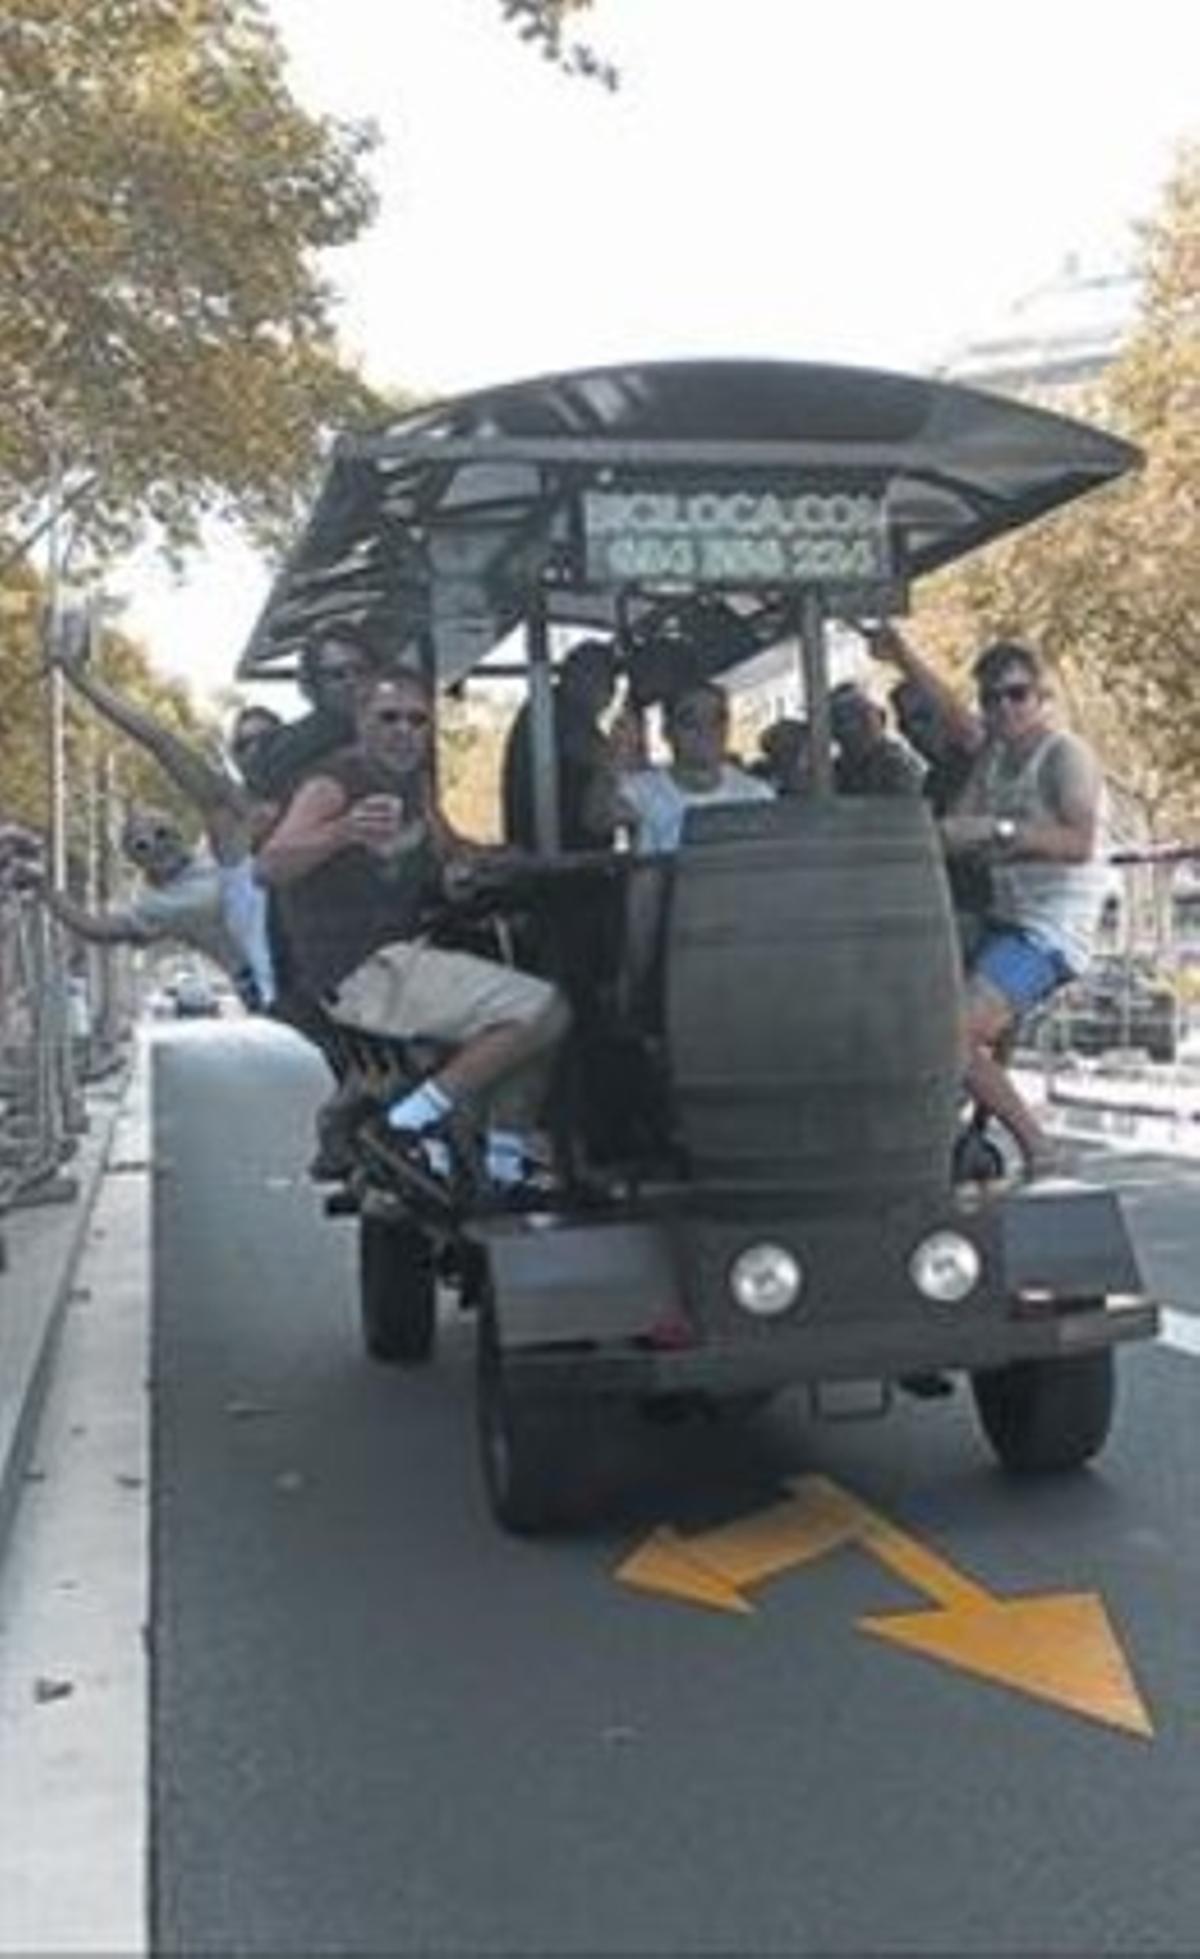 Un vehicle de Biciloca, dilluns passat, al passeig de Sant Joan.